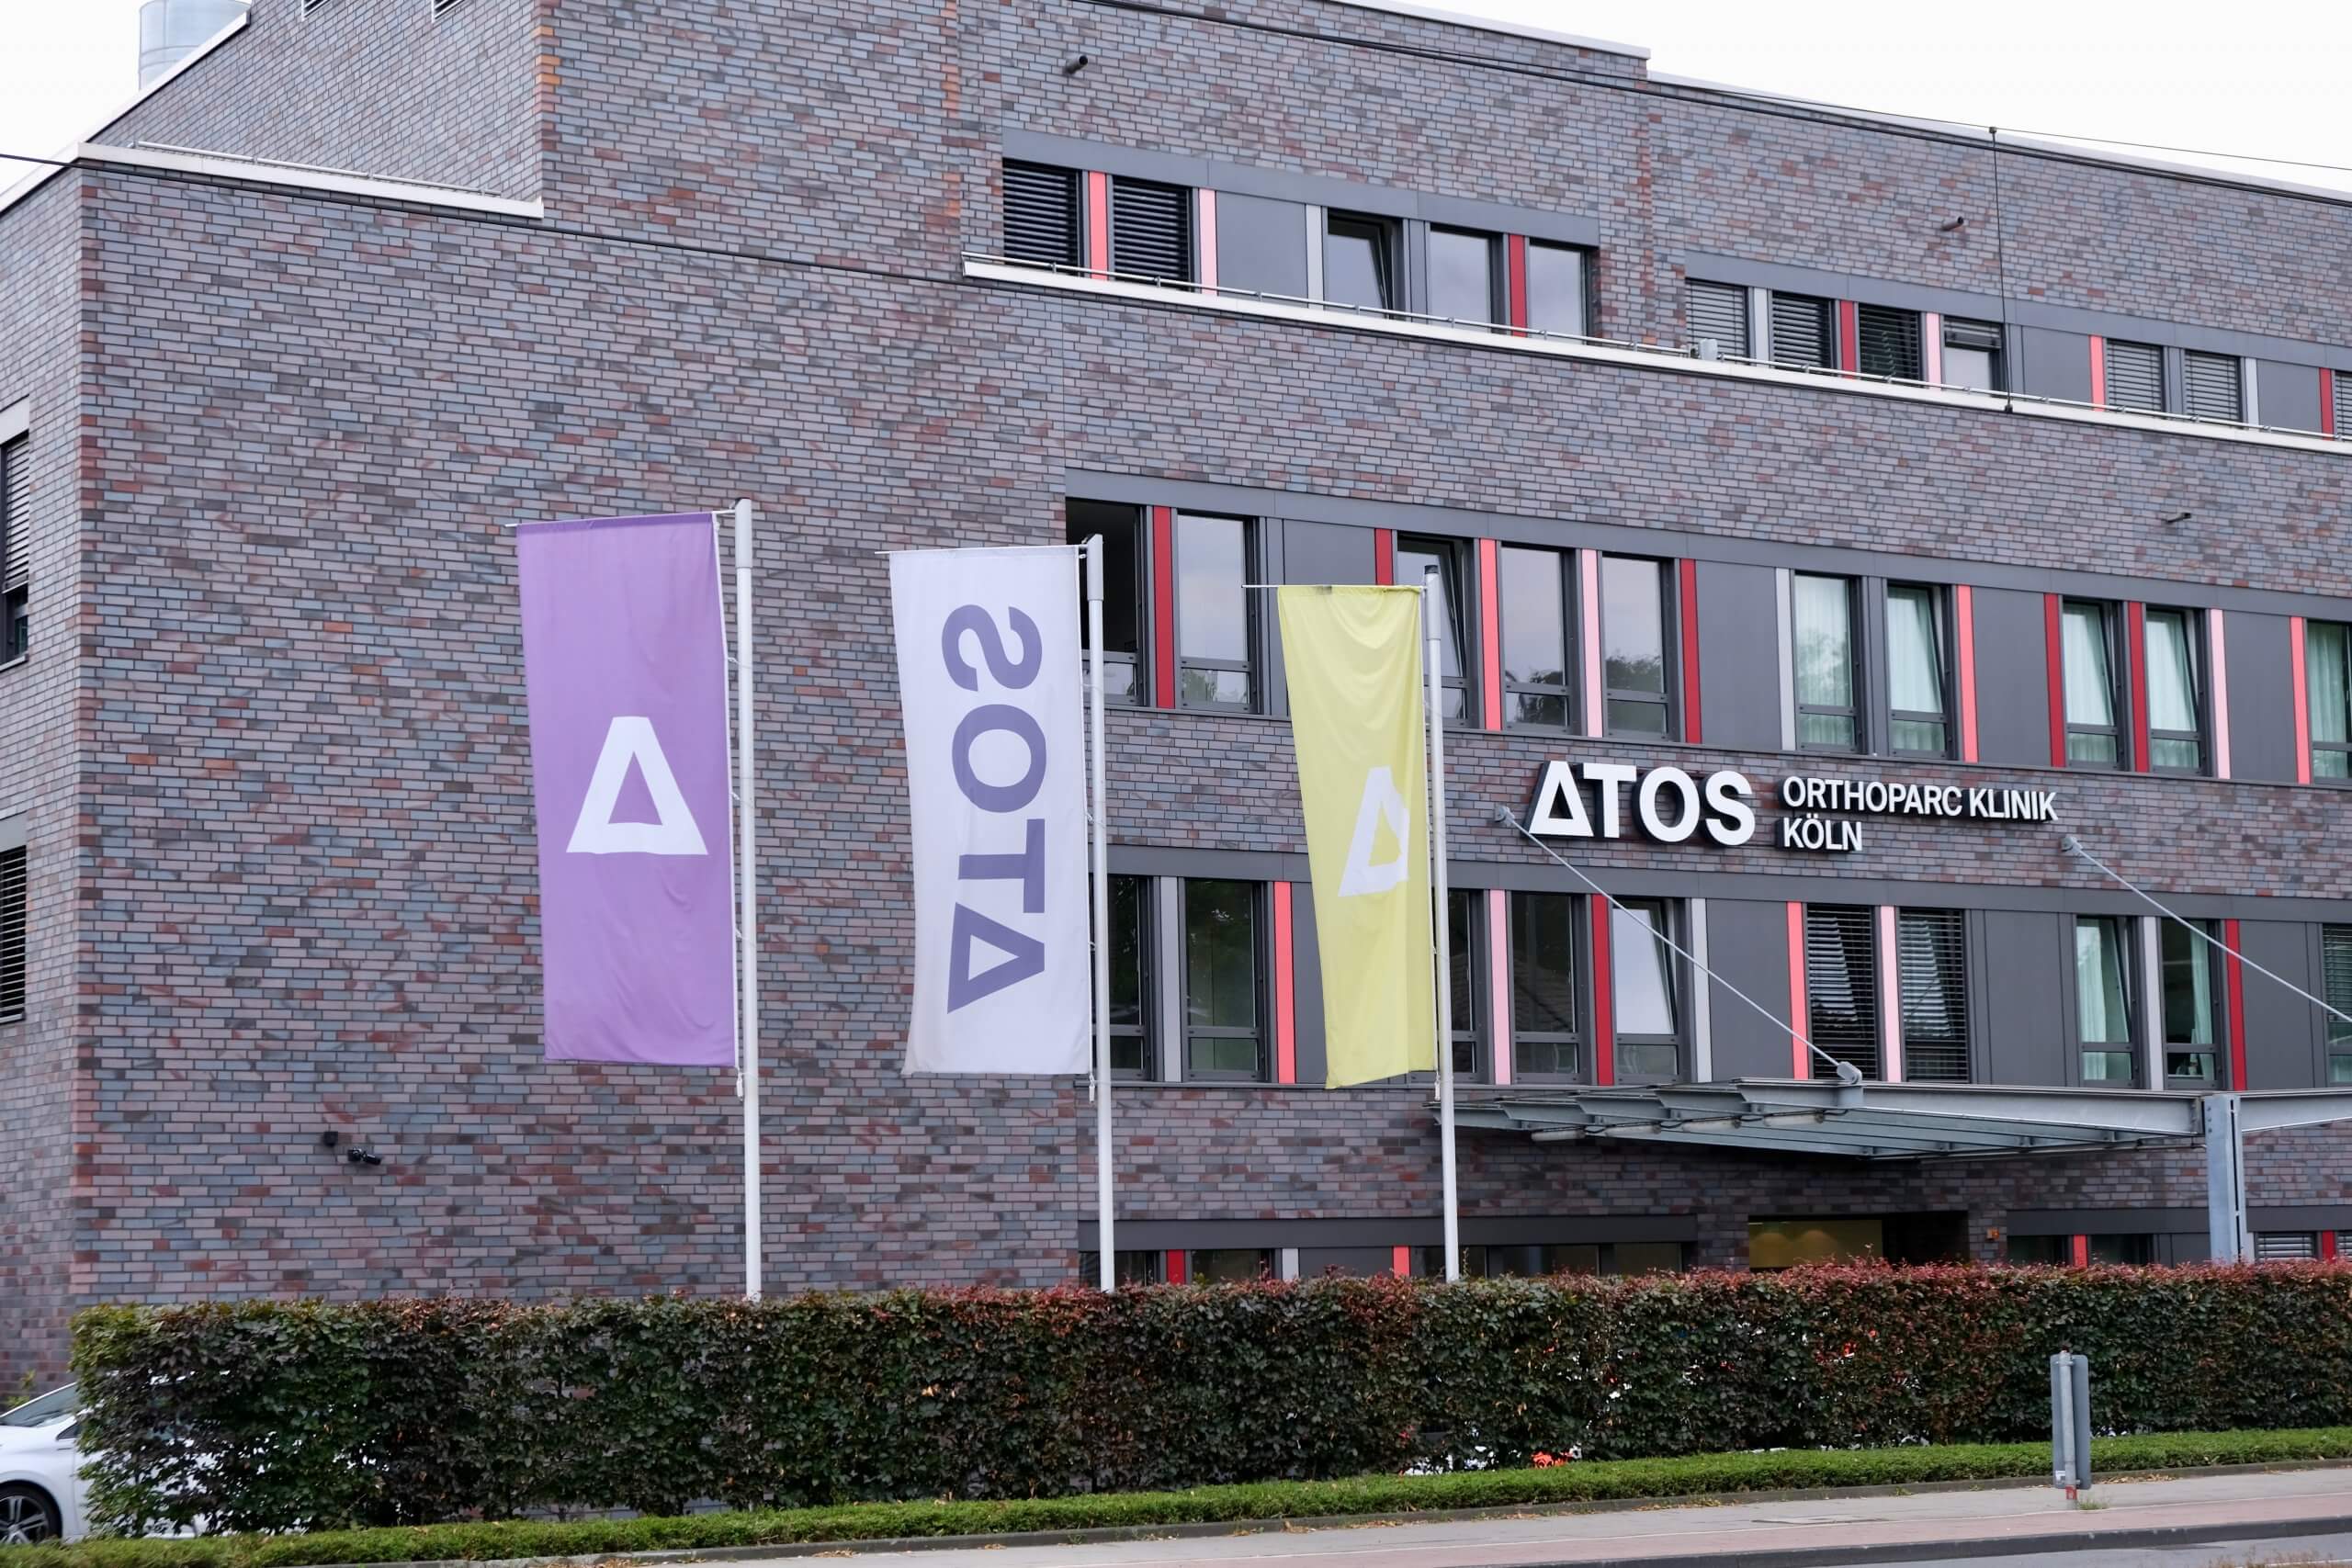 Stationäre Behandlung in der ATOS Orthoparc Klinik Köln!